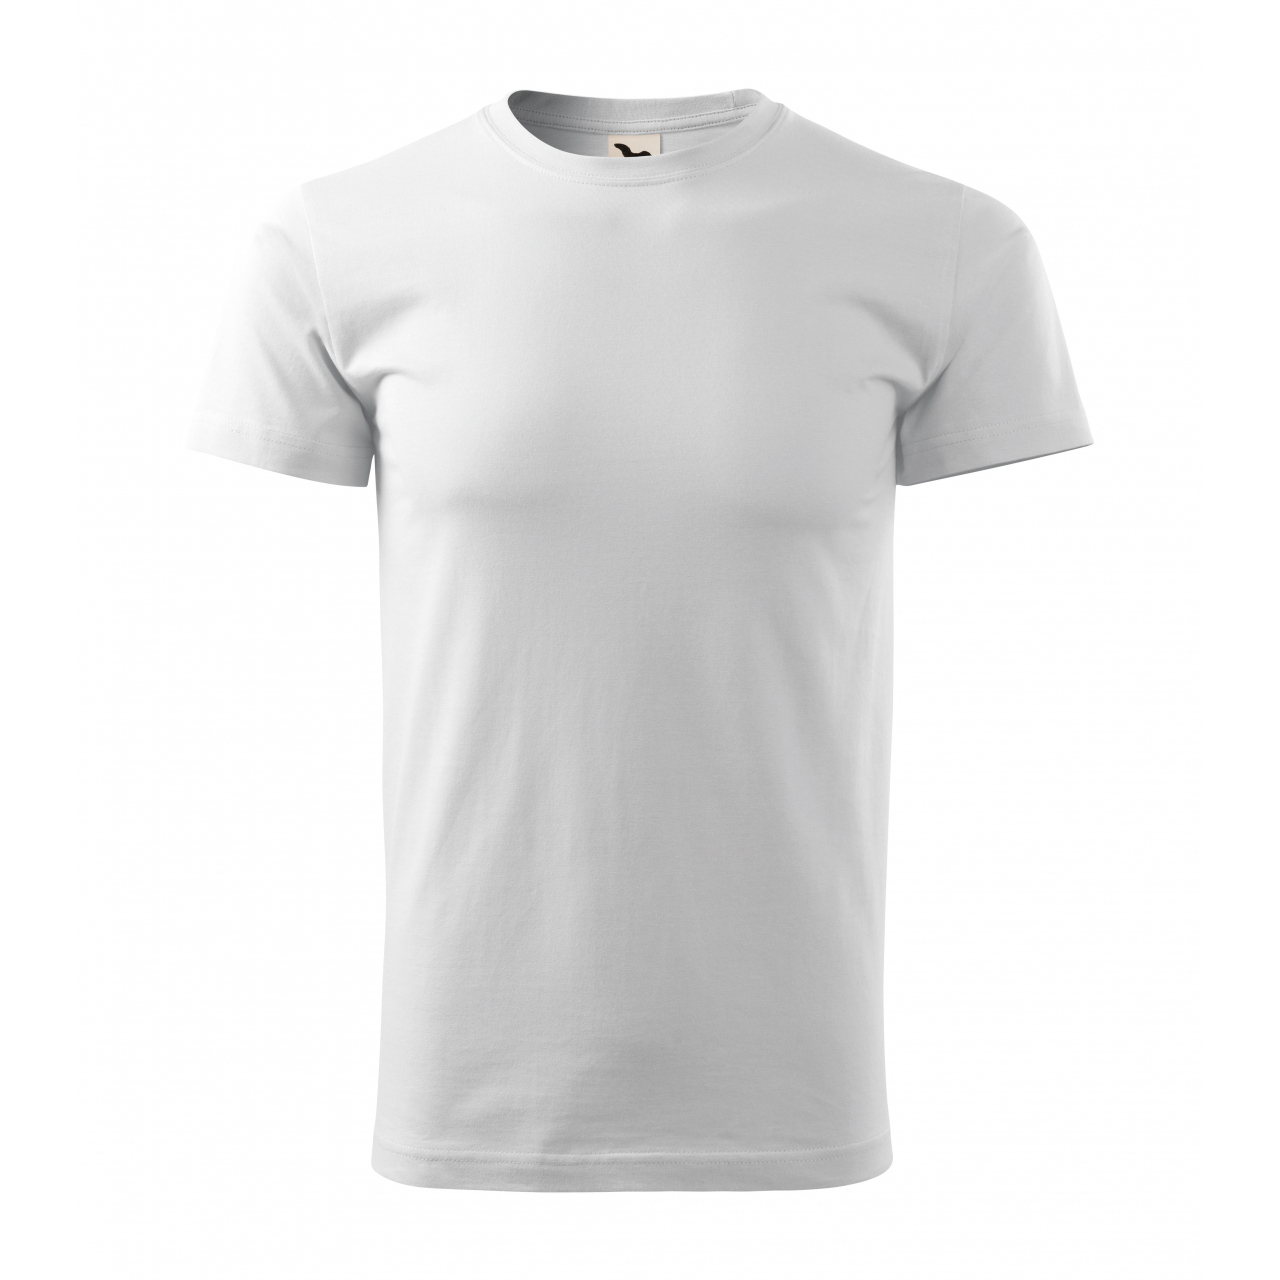 Tričko pánské Malfini Basic Recycled - bílé, XS